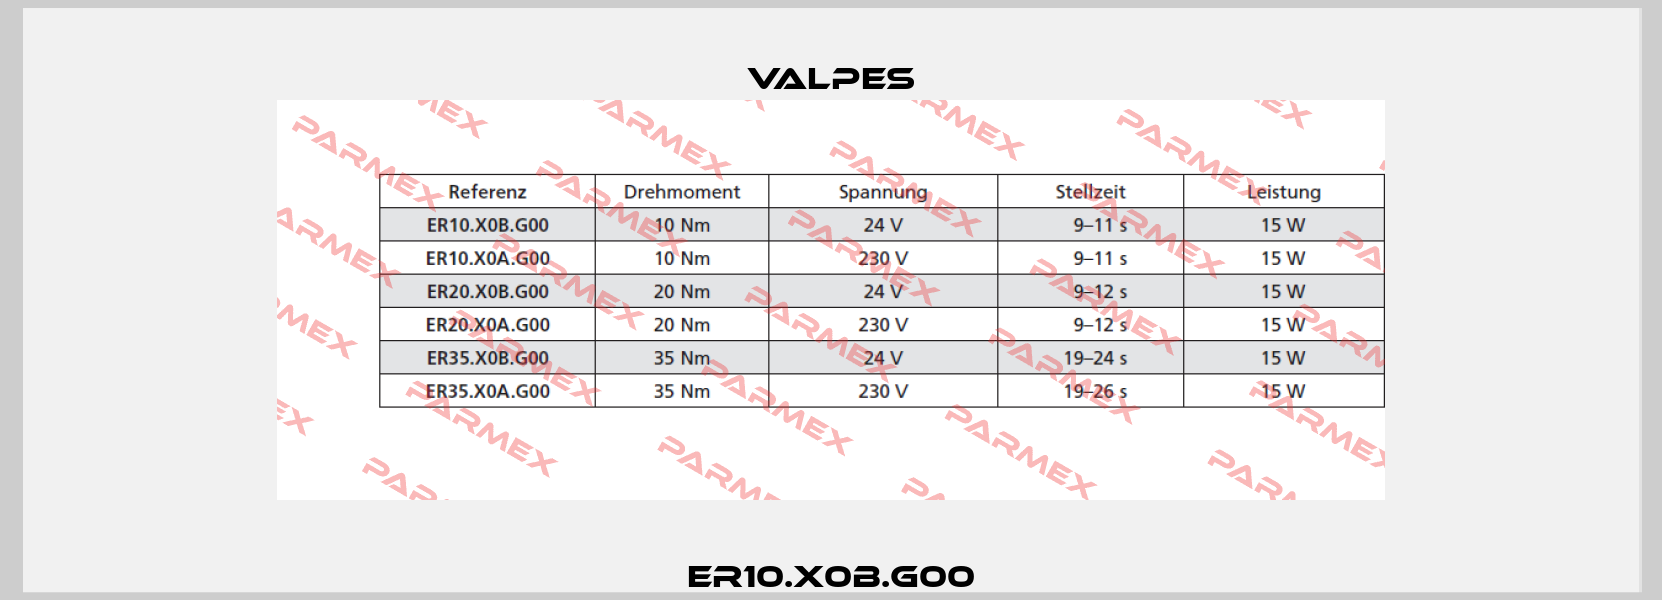 ER10.X0B.G00 Valpes